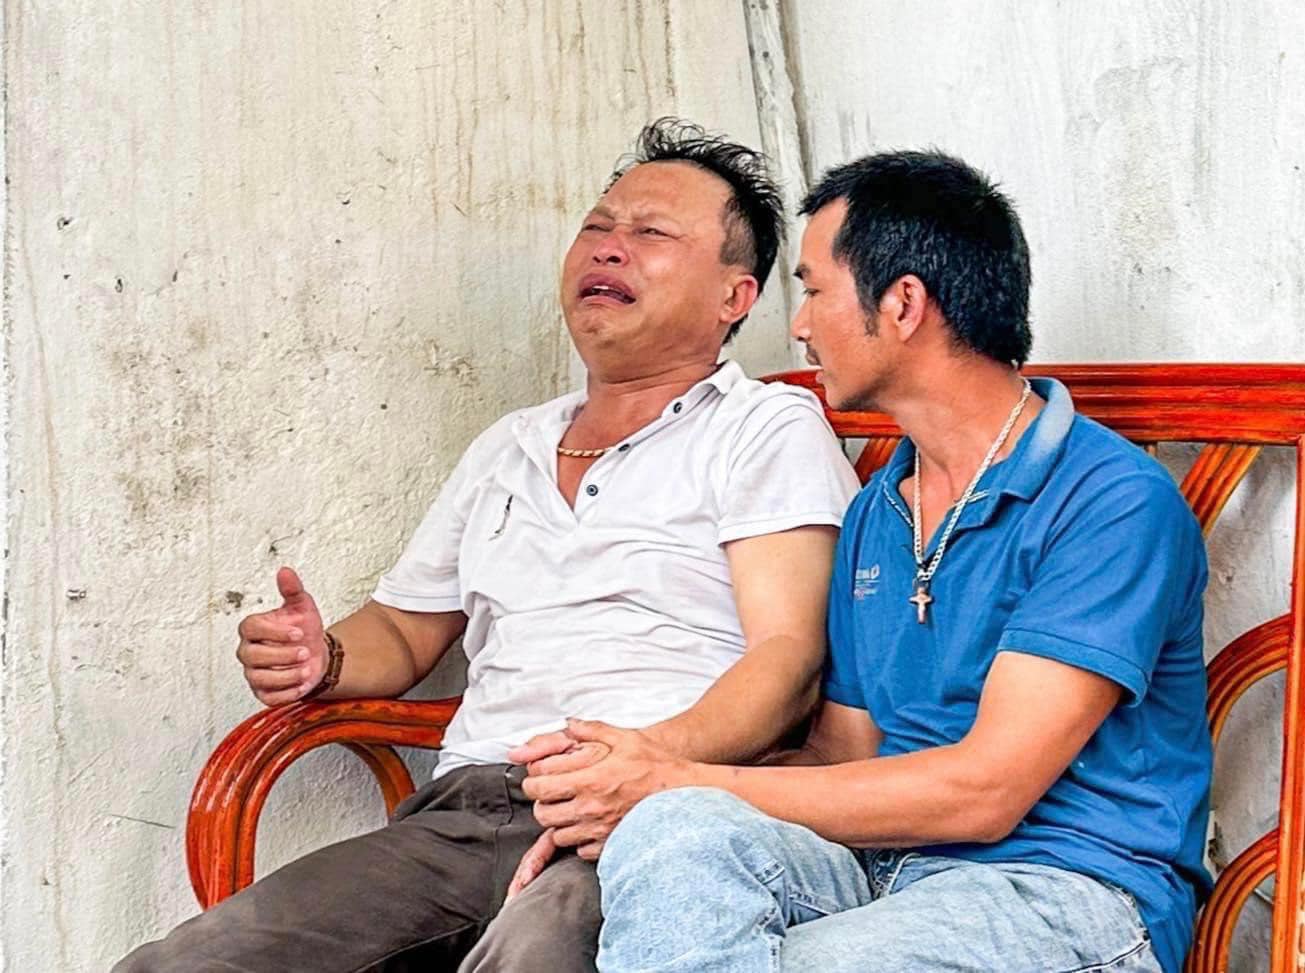 Người bố gào khóc sau vụ cháy khiến 3 người không qua khỏi ở Hà Nội: 'Con ơi, con ở đâu về với bố' - ảnh 1